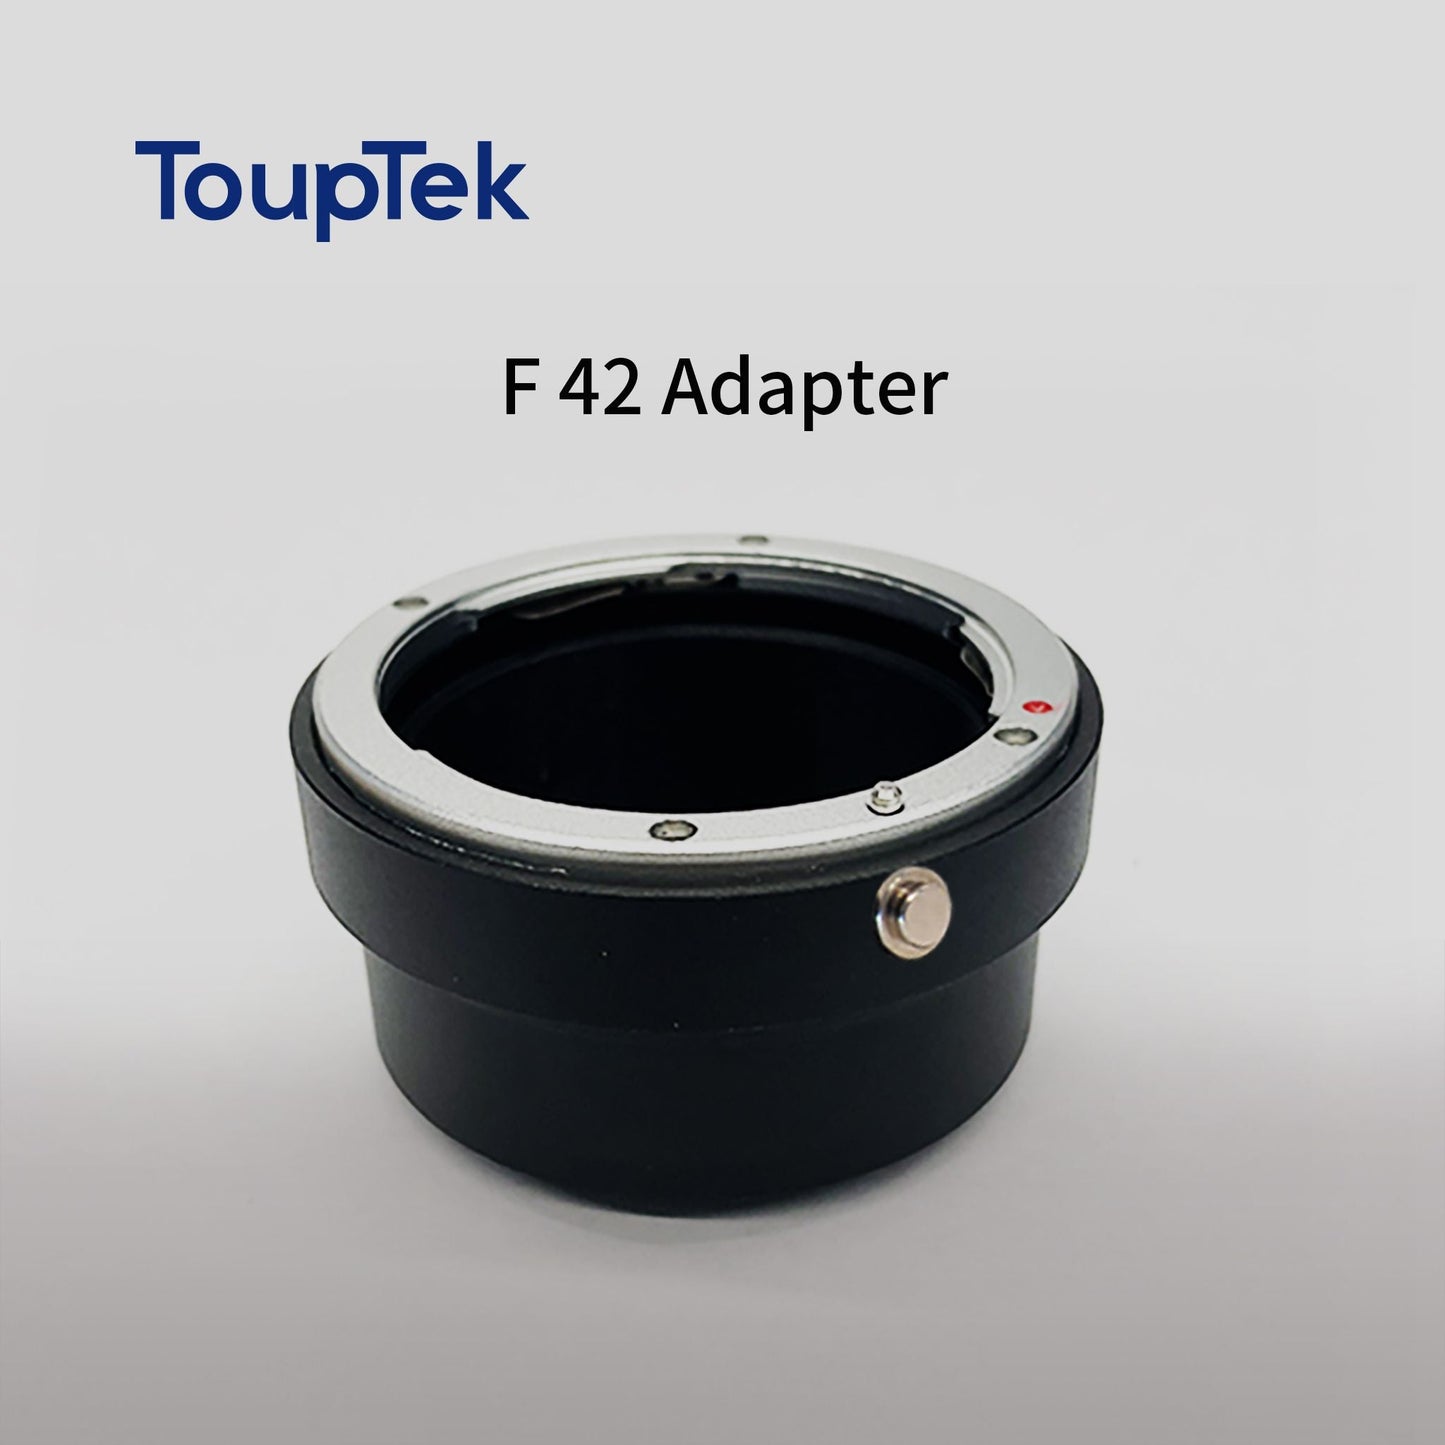 EOS Lens EF/F42 Adapter for ATR Camera